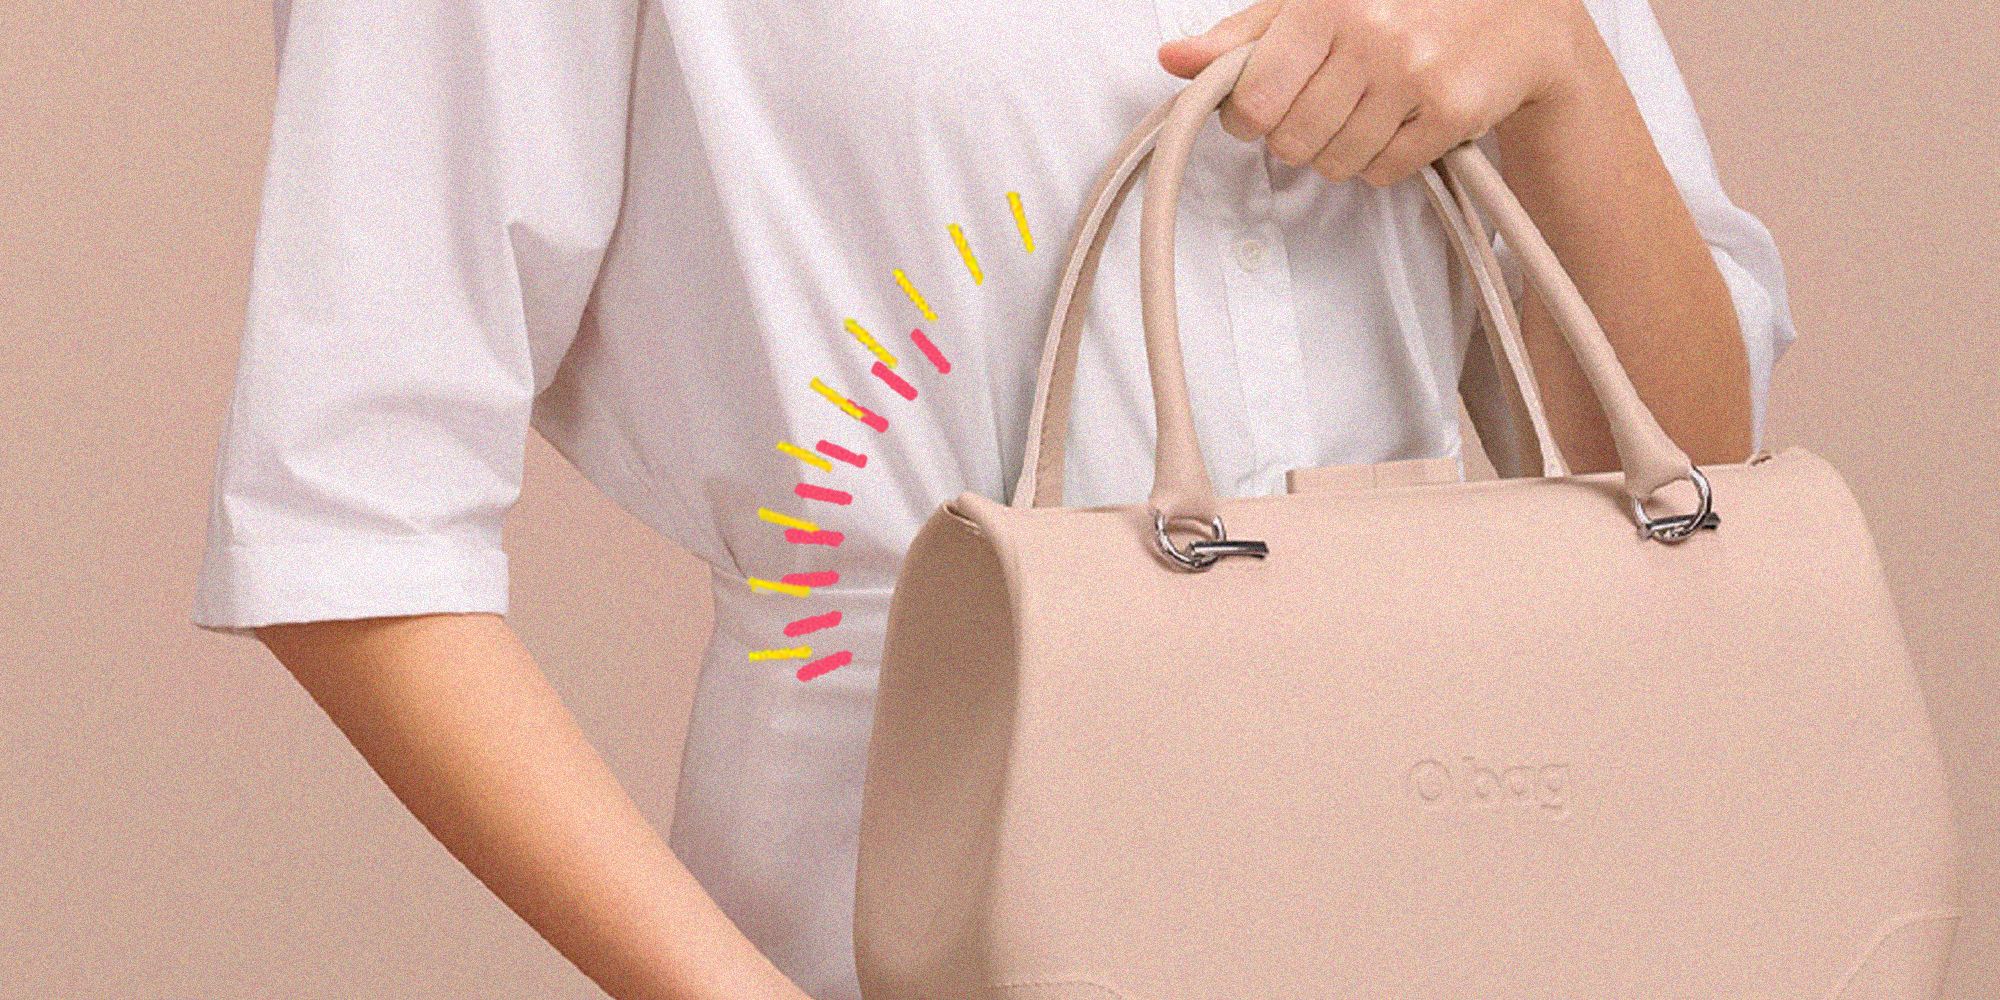 la moda 2020 delle borse donna ha una new entry speciale, si chiama doc, è una borsa bauletto tracolla e la firma o bag per festeggiare i suoi primi 10 anni